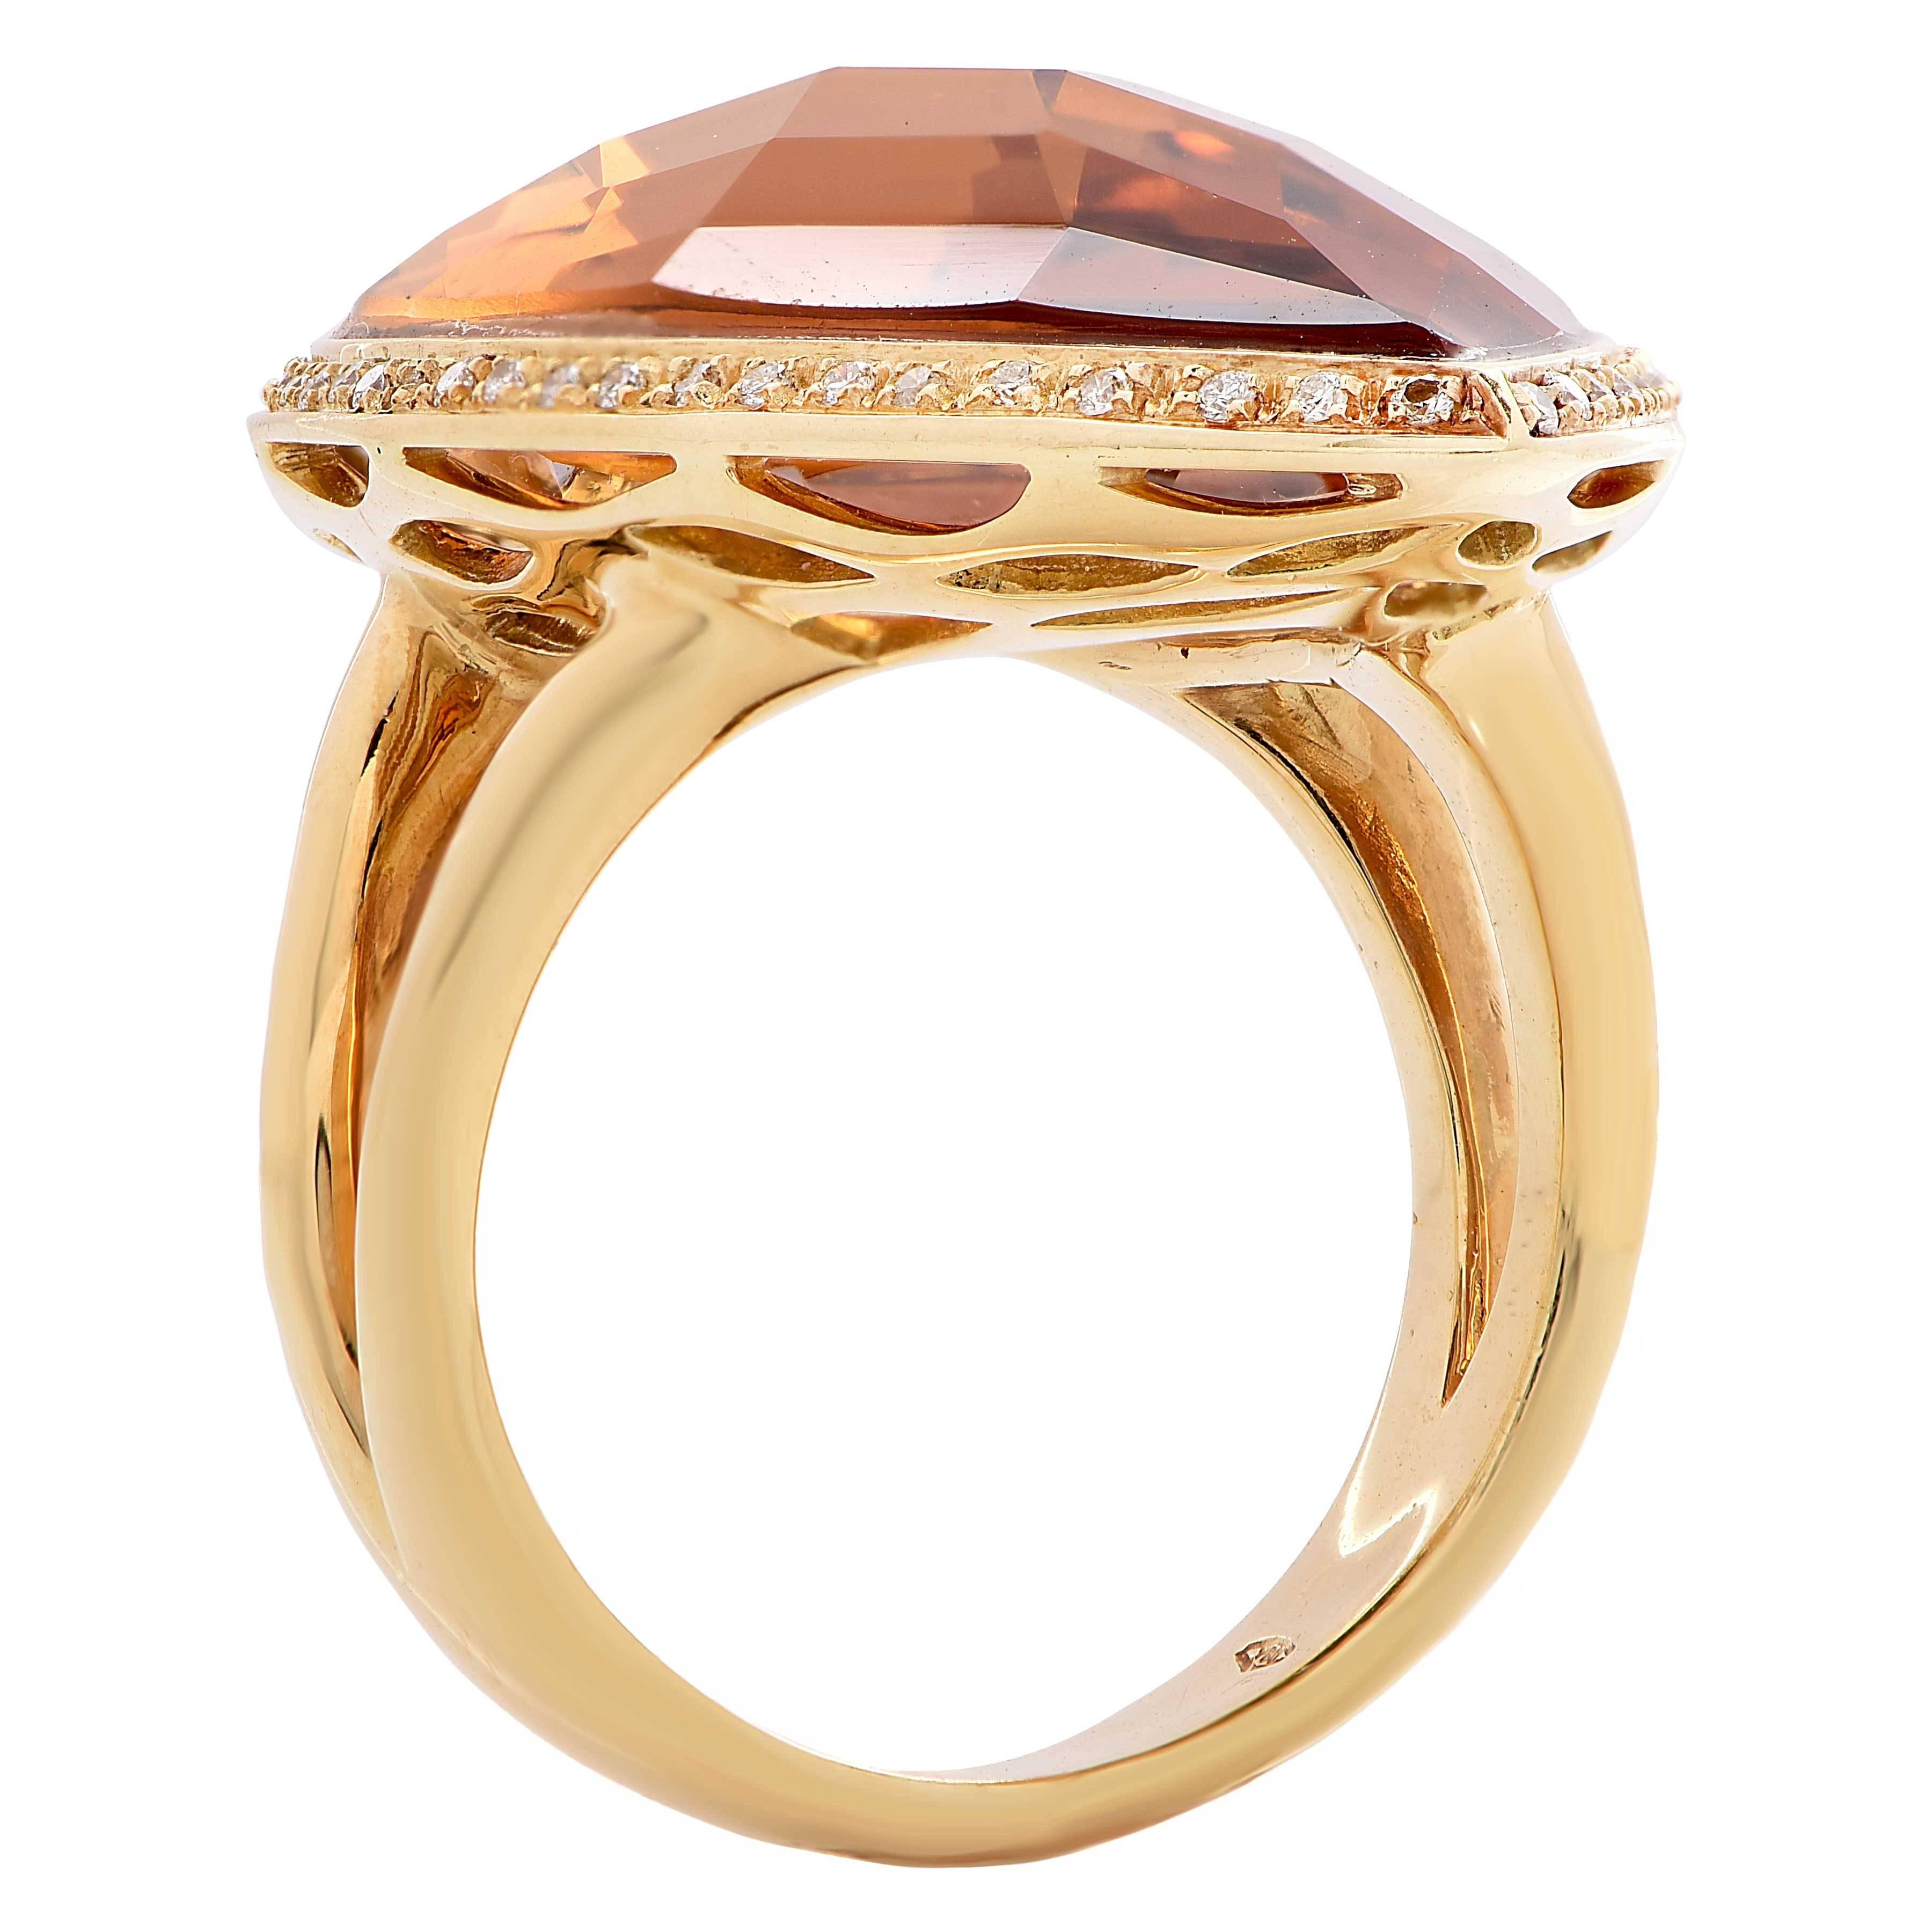 23 carat gold ring price